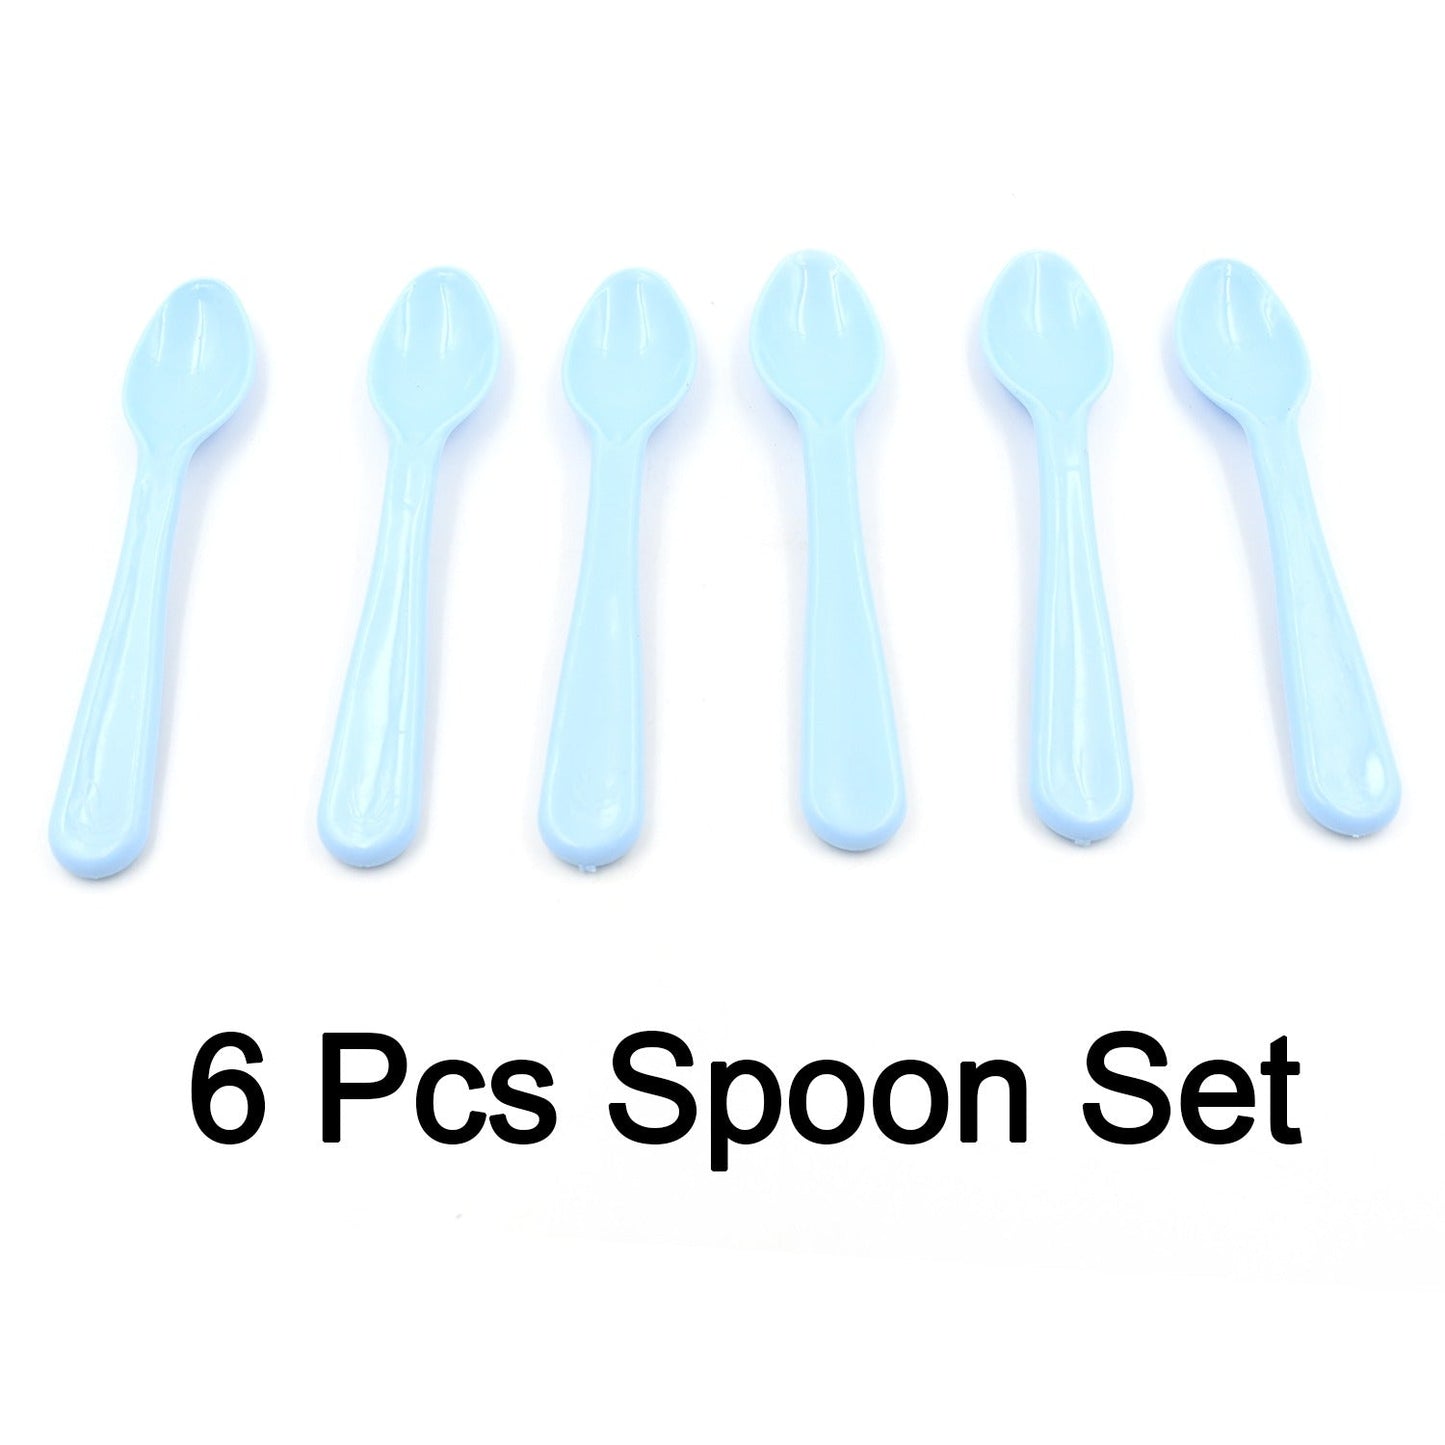 5349 Food Plastic Spoon Set, Plastic Table Spoon Set Plastic Tea Spoon, Coffee with ABS Plastic, Heat-Resistant Spoon (6 Pc Set )